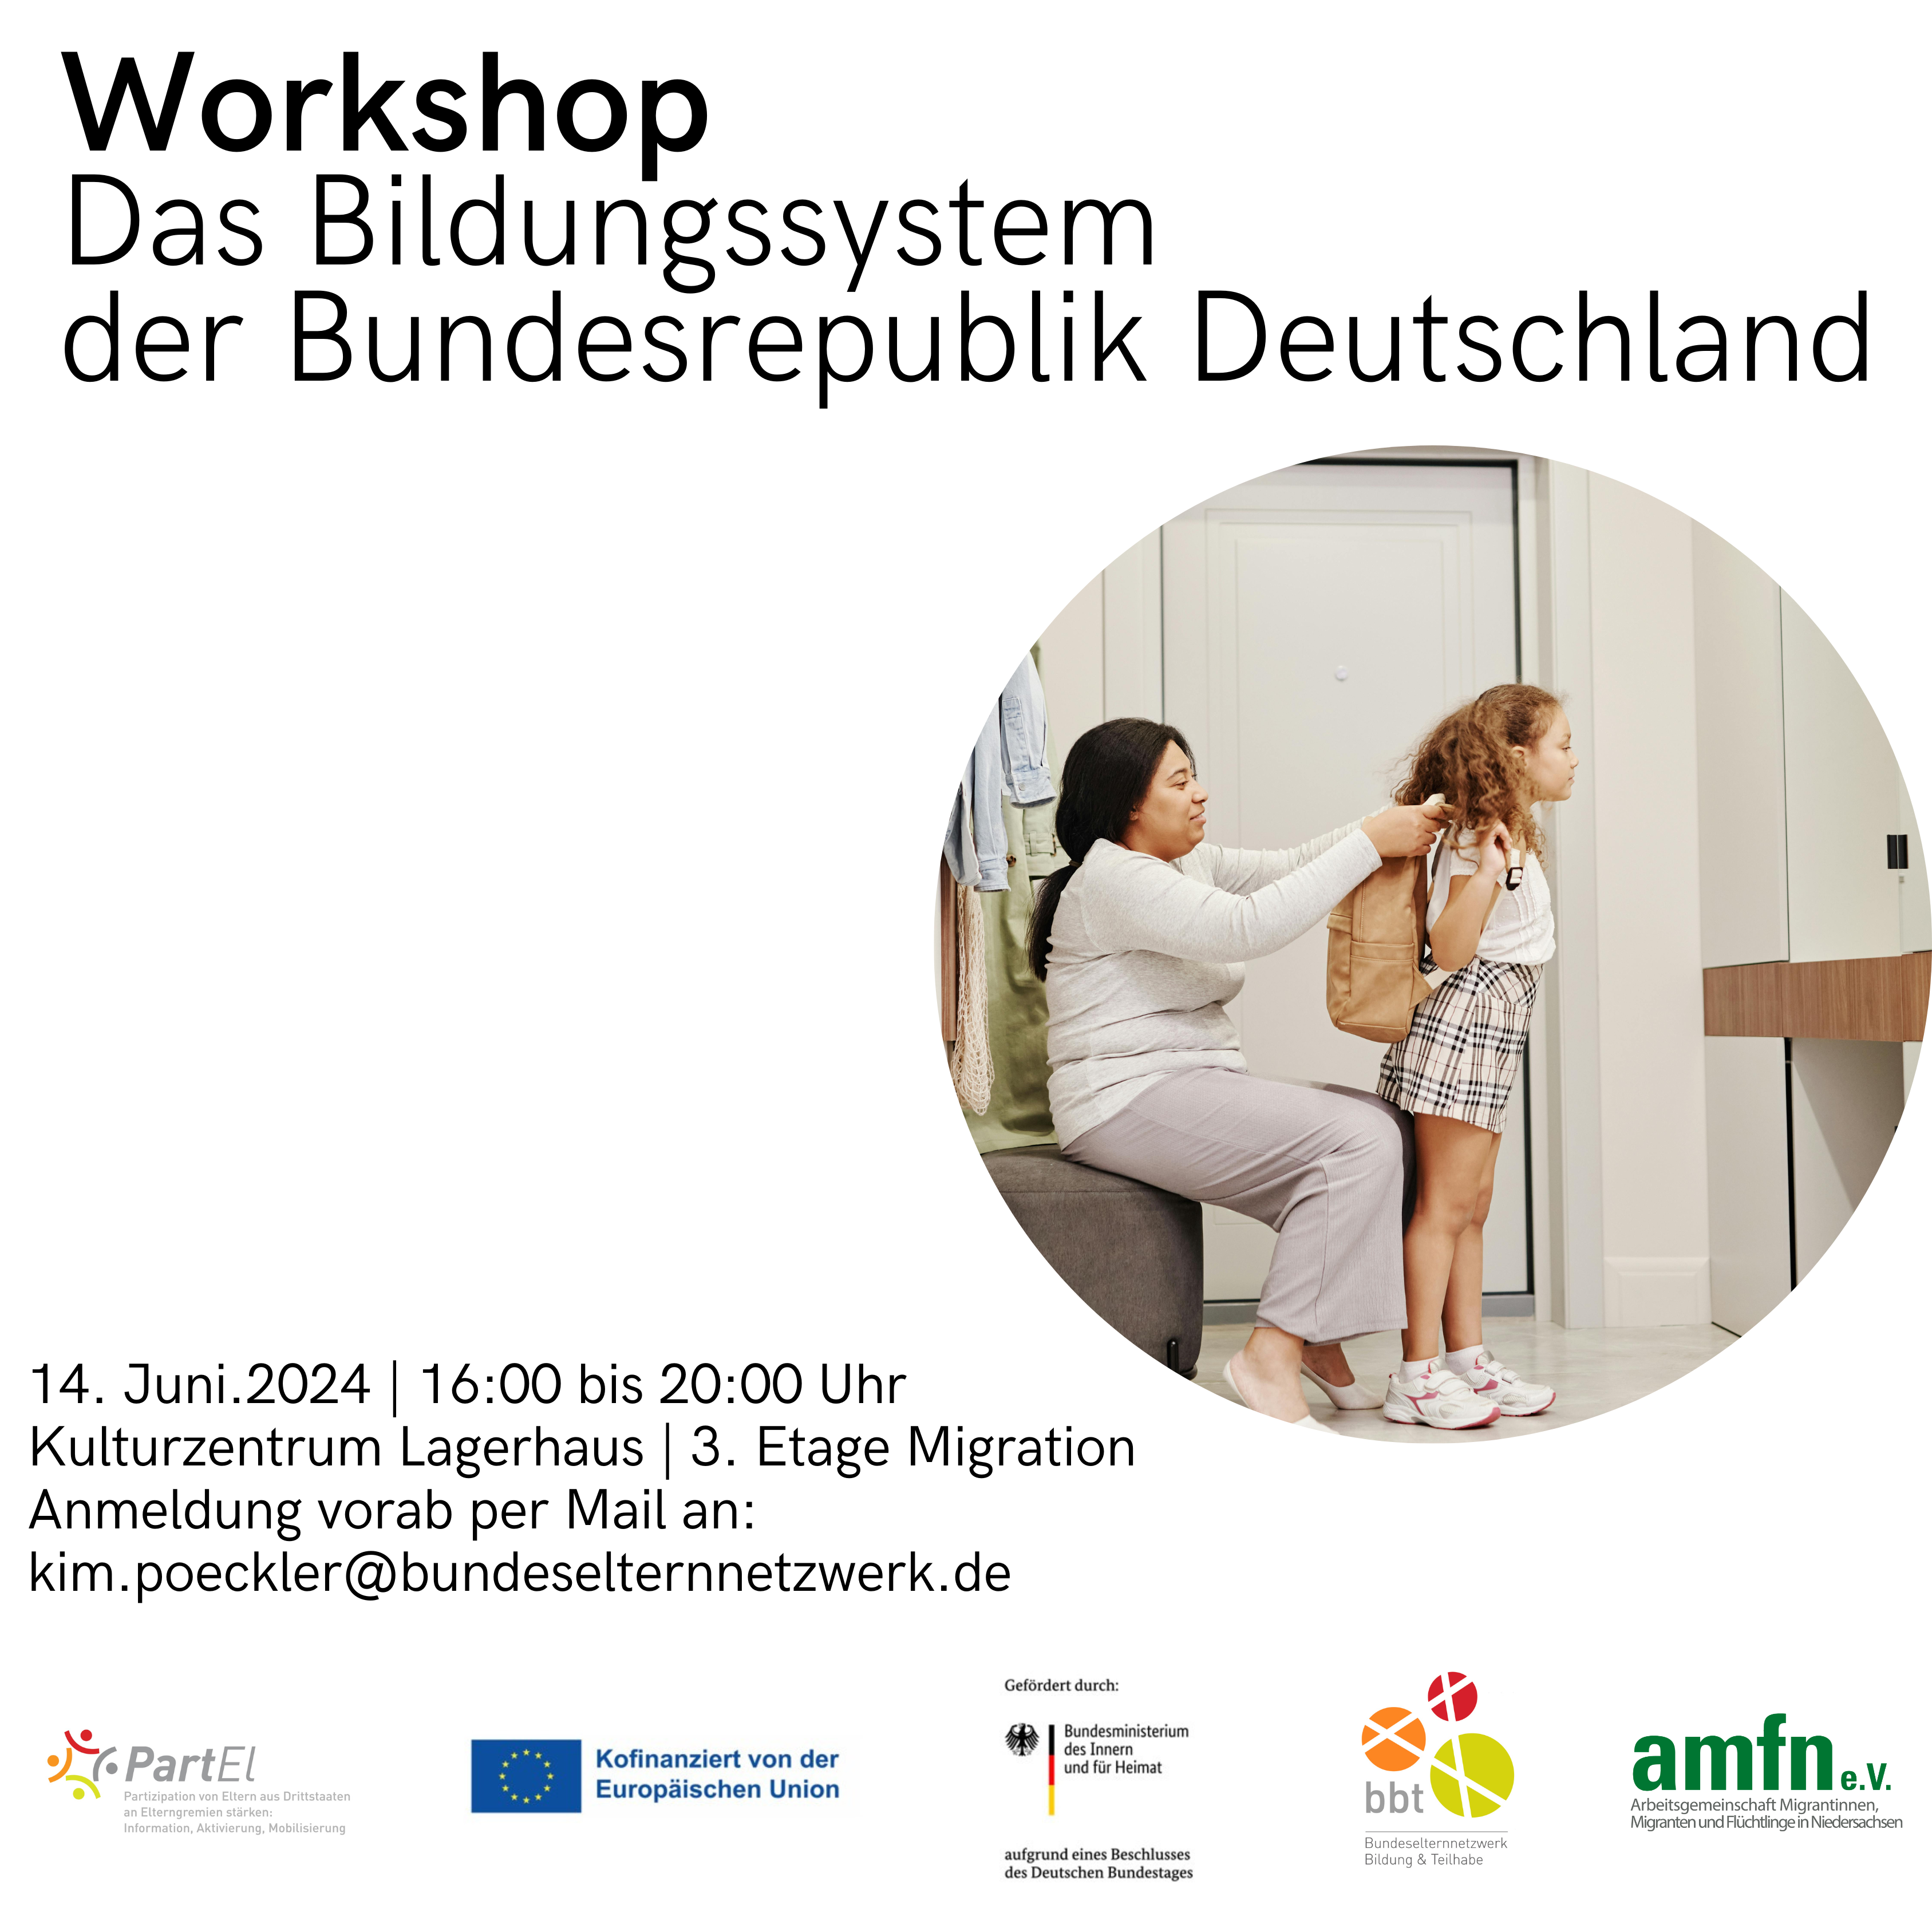 Workshop das Bildungssystem in Deutschland